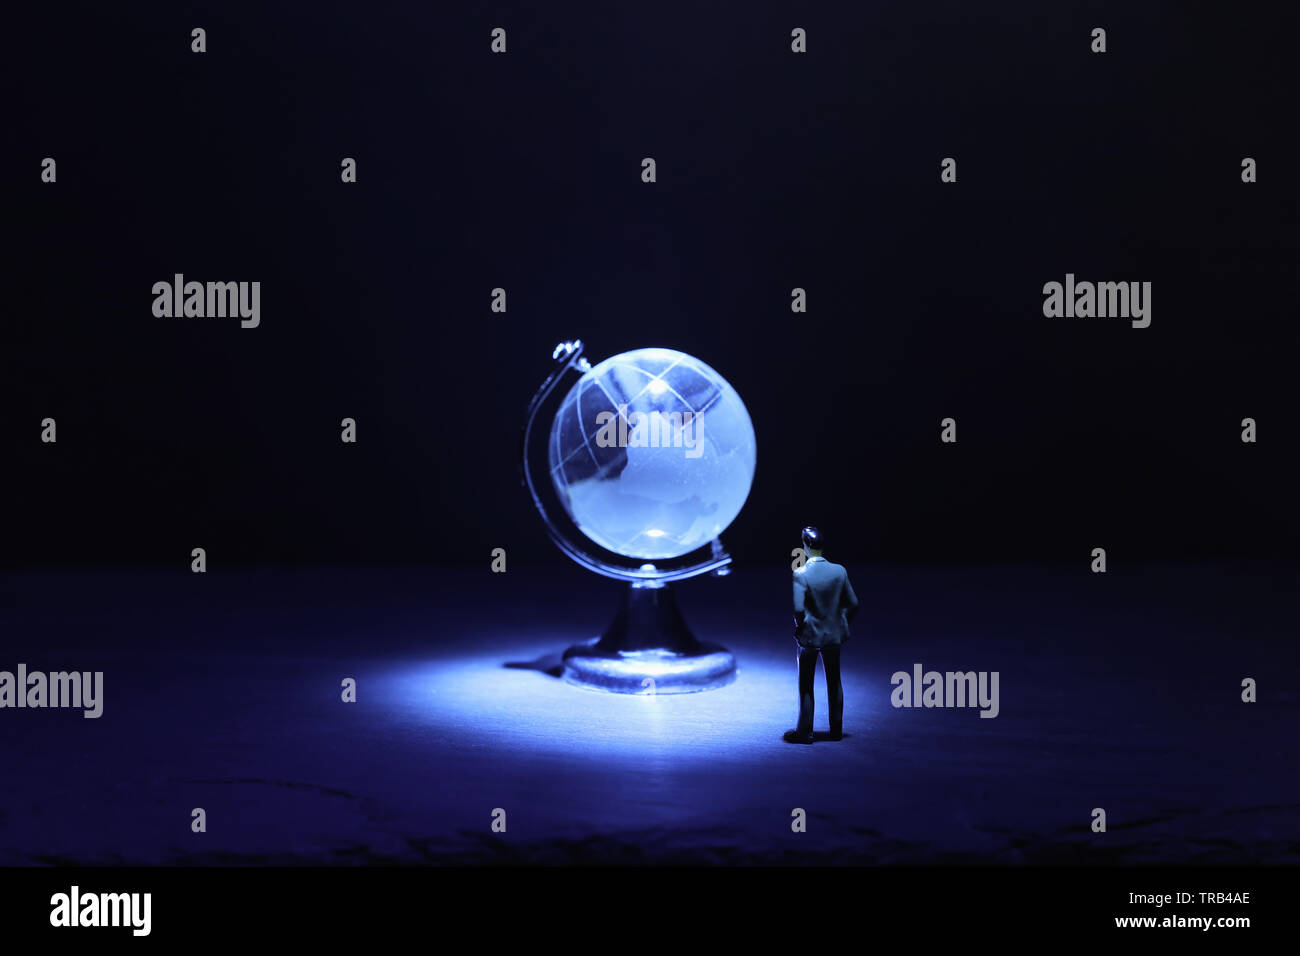 L'homme à la petite miniature au globe de cristal en face de Dark and Light.spectaculaire concept questions mondiales Banque D'Images